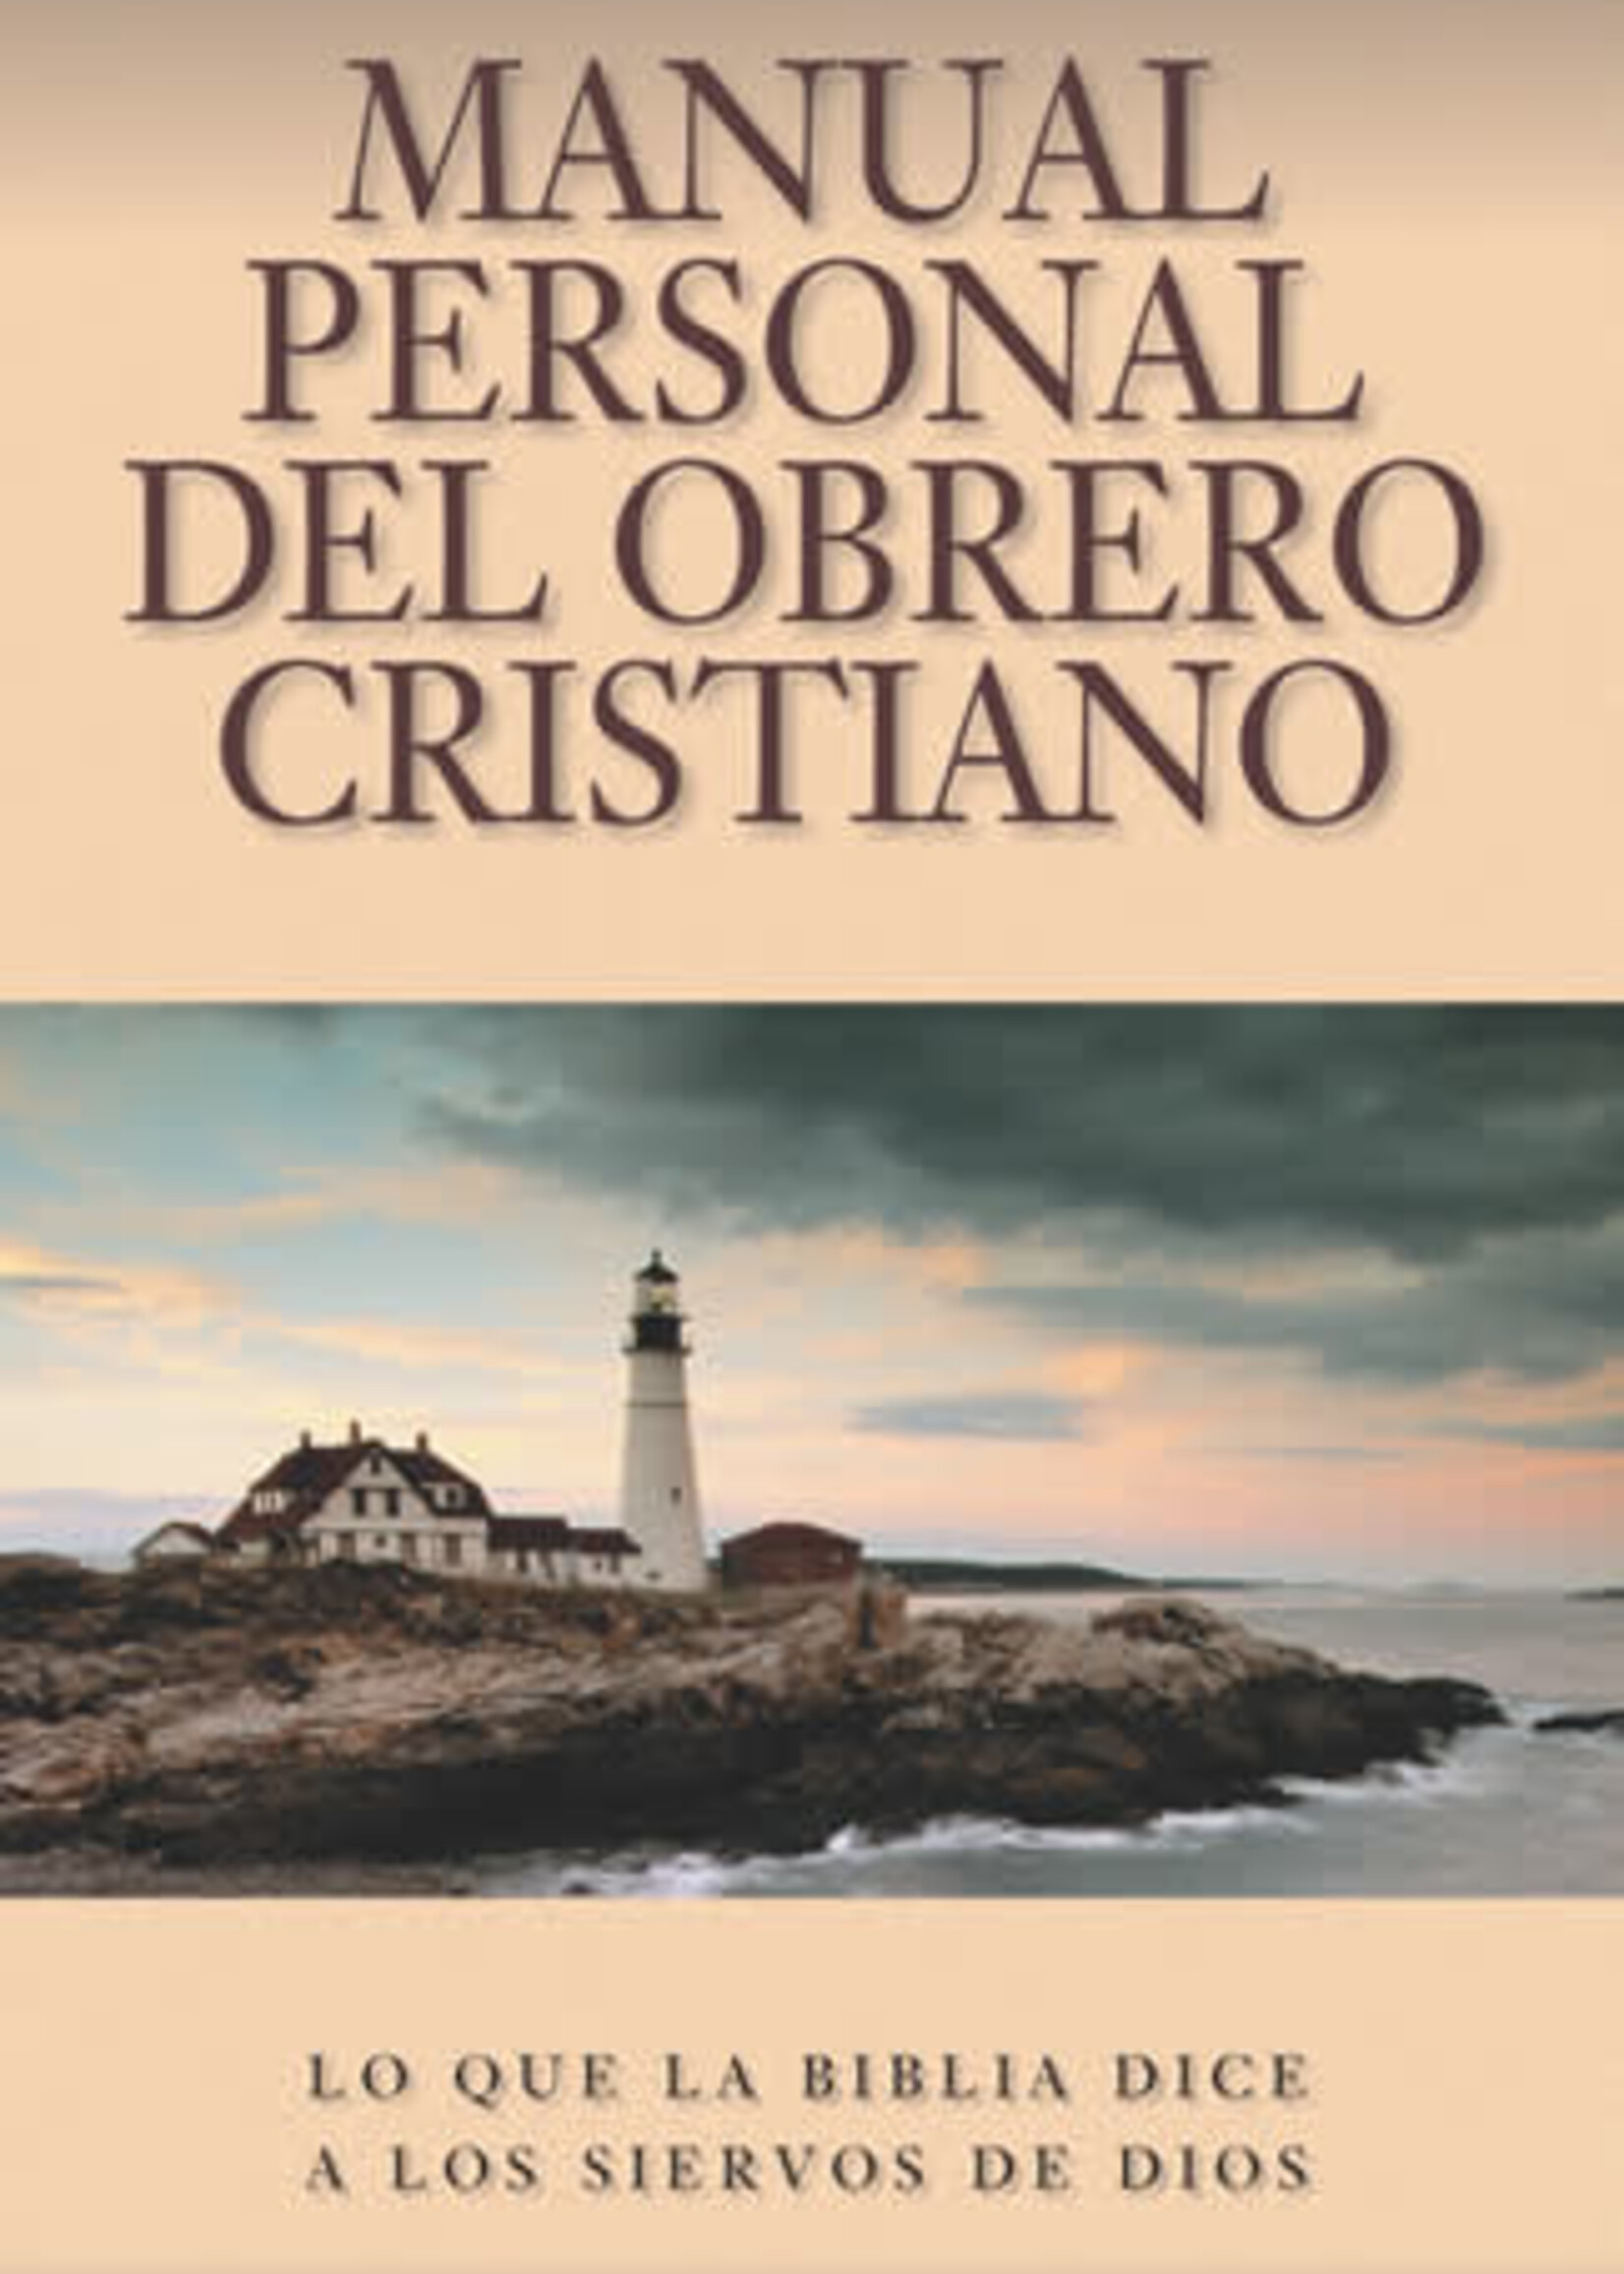 PORTAVOZ MANUAL PERSONAL DEL OBRERO CRISTIANO